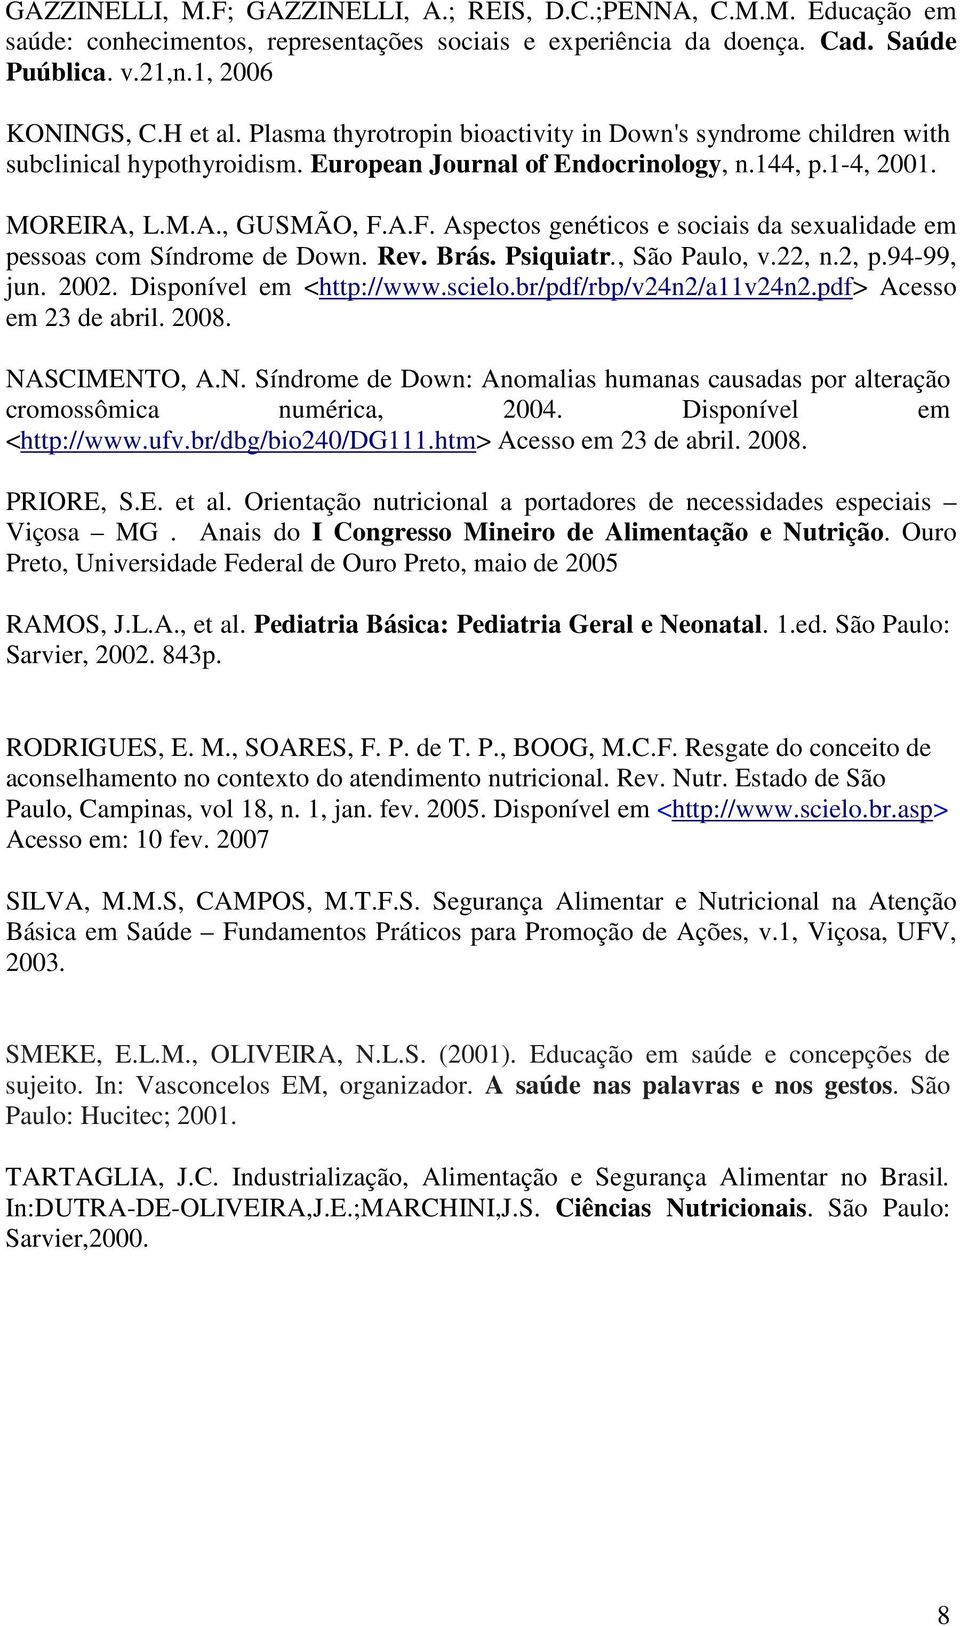 A.F. Aspectos genéticos e sociais da sexualidade em pessoas com Síndrome de Down. Rev. Brás. Psiquiatr., São Paulo, v.22, n.2, p.94-99, jun. 2002. Disponível em <http://www.scielo.